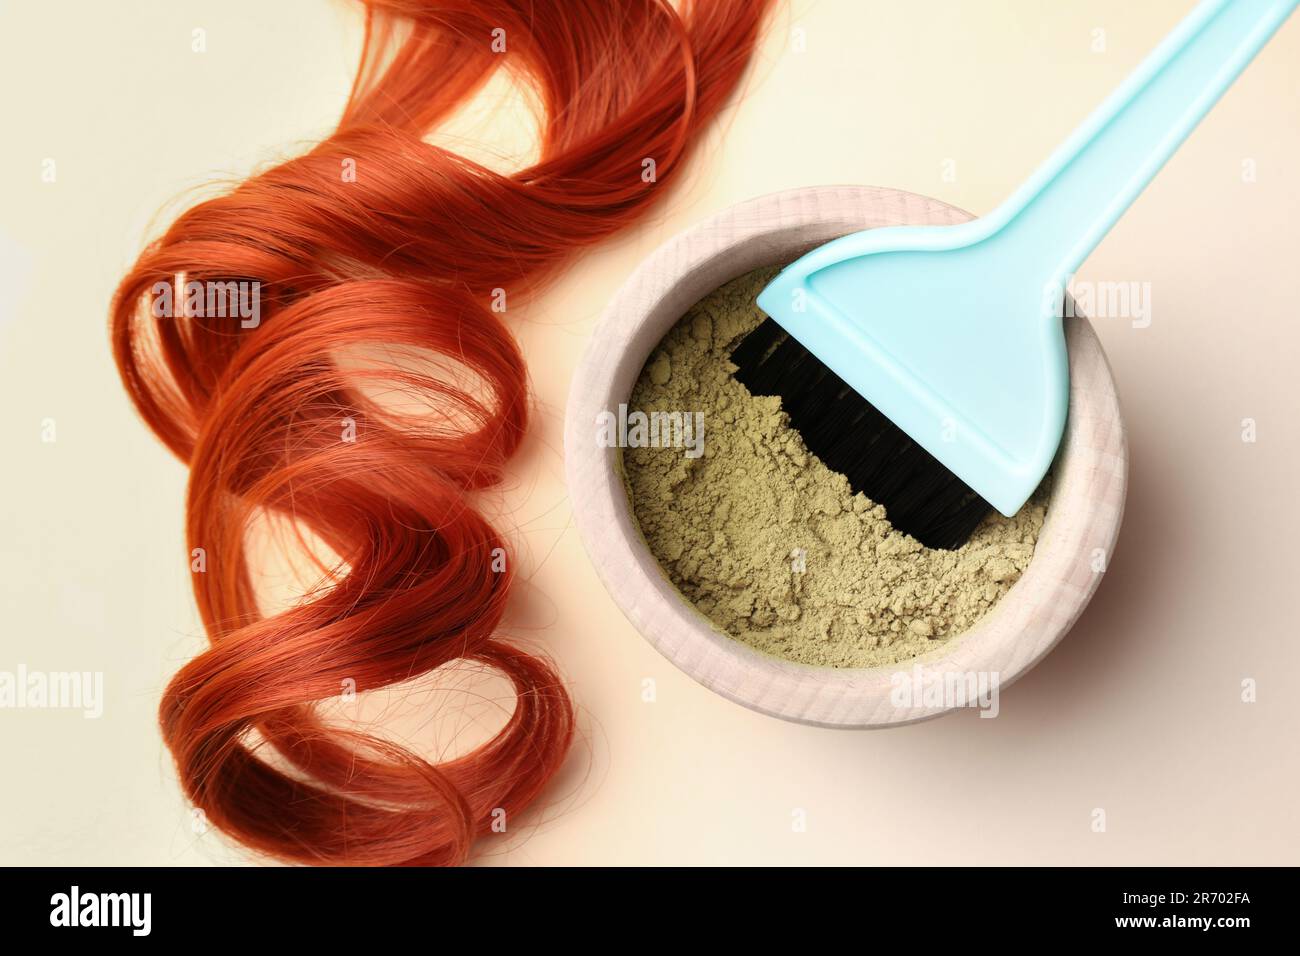 Schüssel mit Hennapulver, Bürste und rotem Strang auf beigefarbenem  Hintergrund, flach liegend. Natürliche Haarfarbe Stockfotografie - Alamy